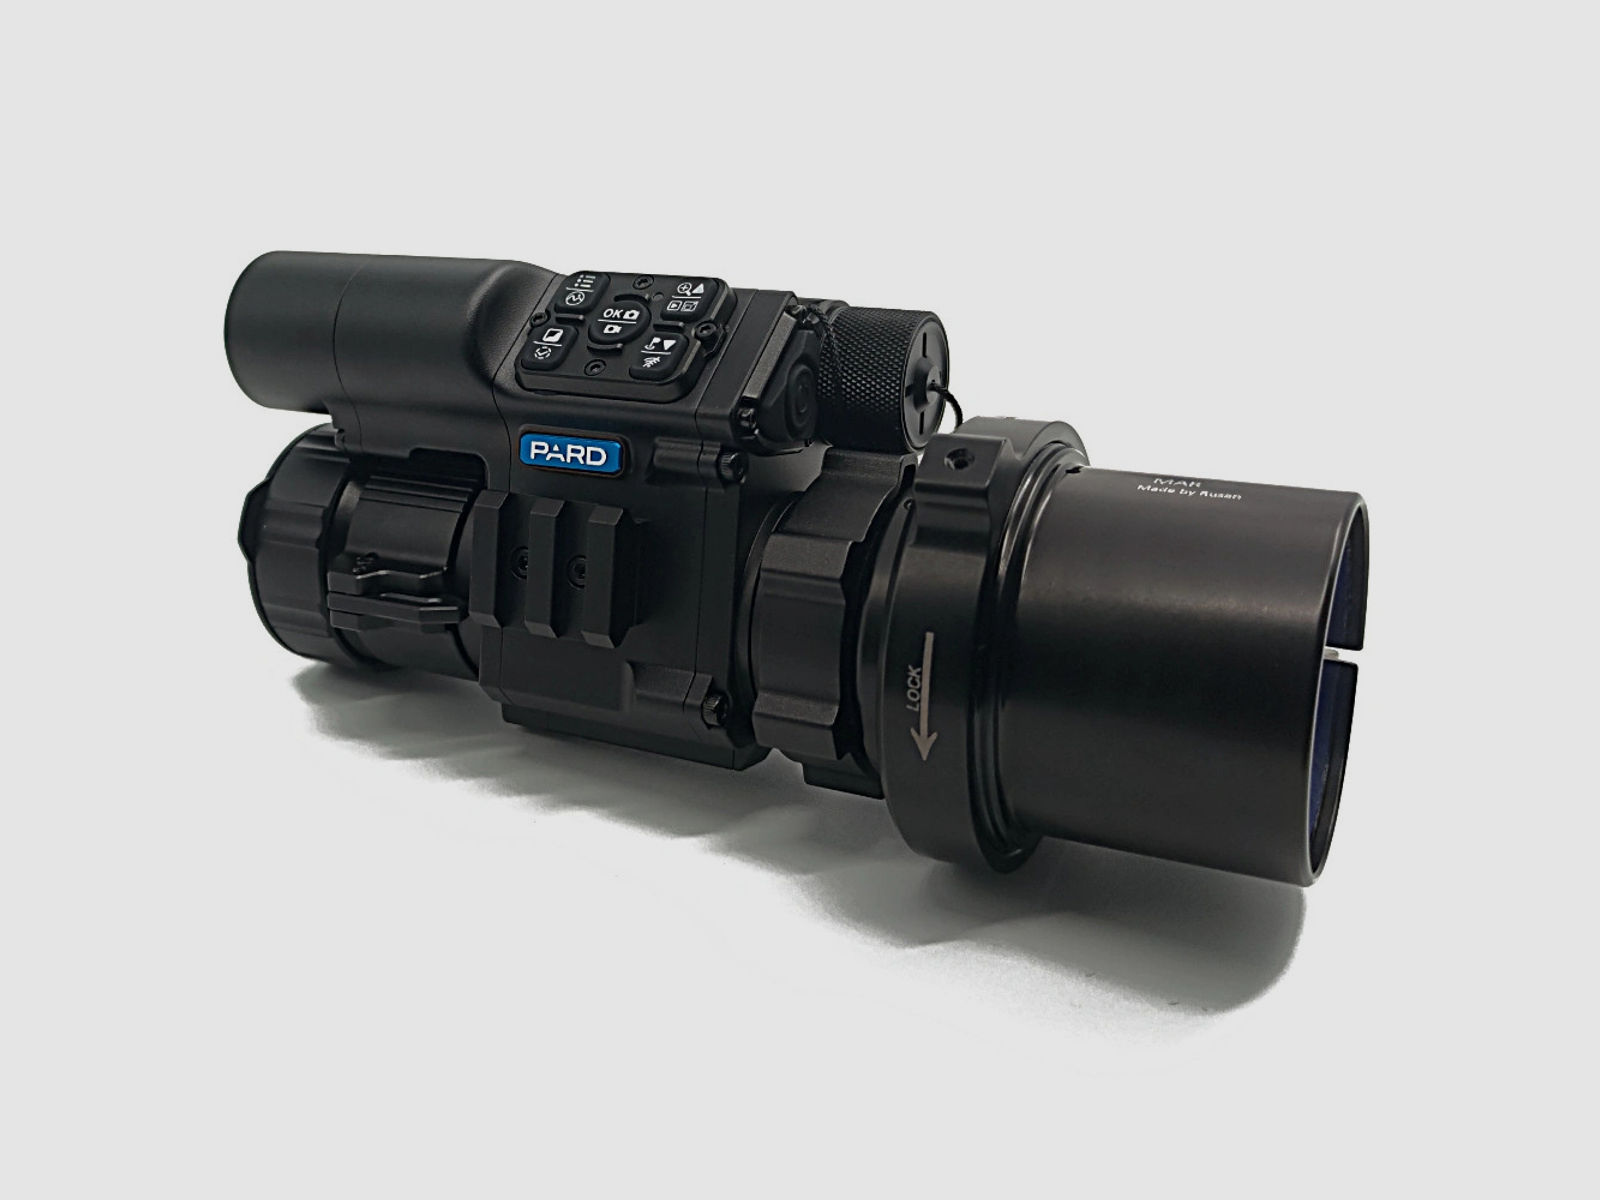 PARD FD1 Nachtsicht 3 in 1 Vorsatz, Monokular & Zielfernrohr - 940 nm mit LRF 63,5 mm RUSAN MAR + RUSAN MCR